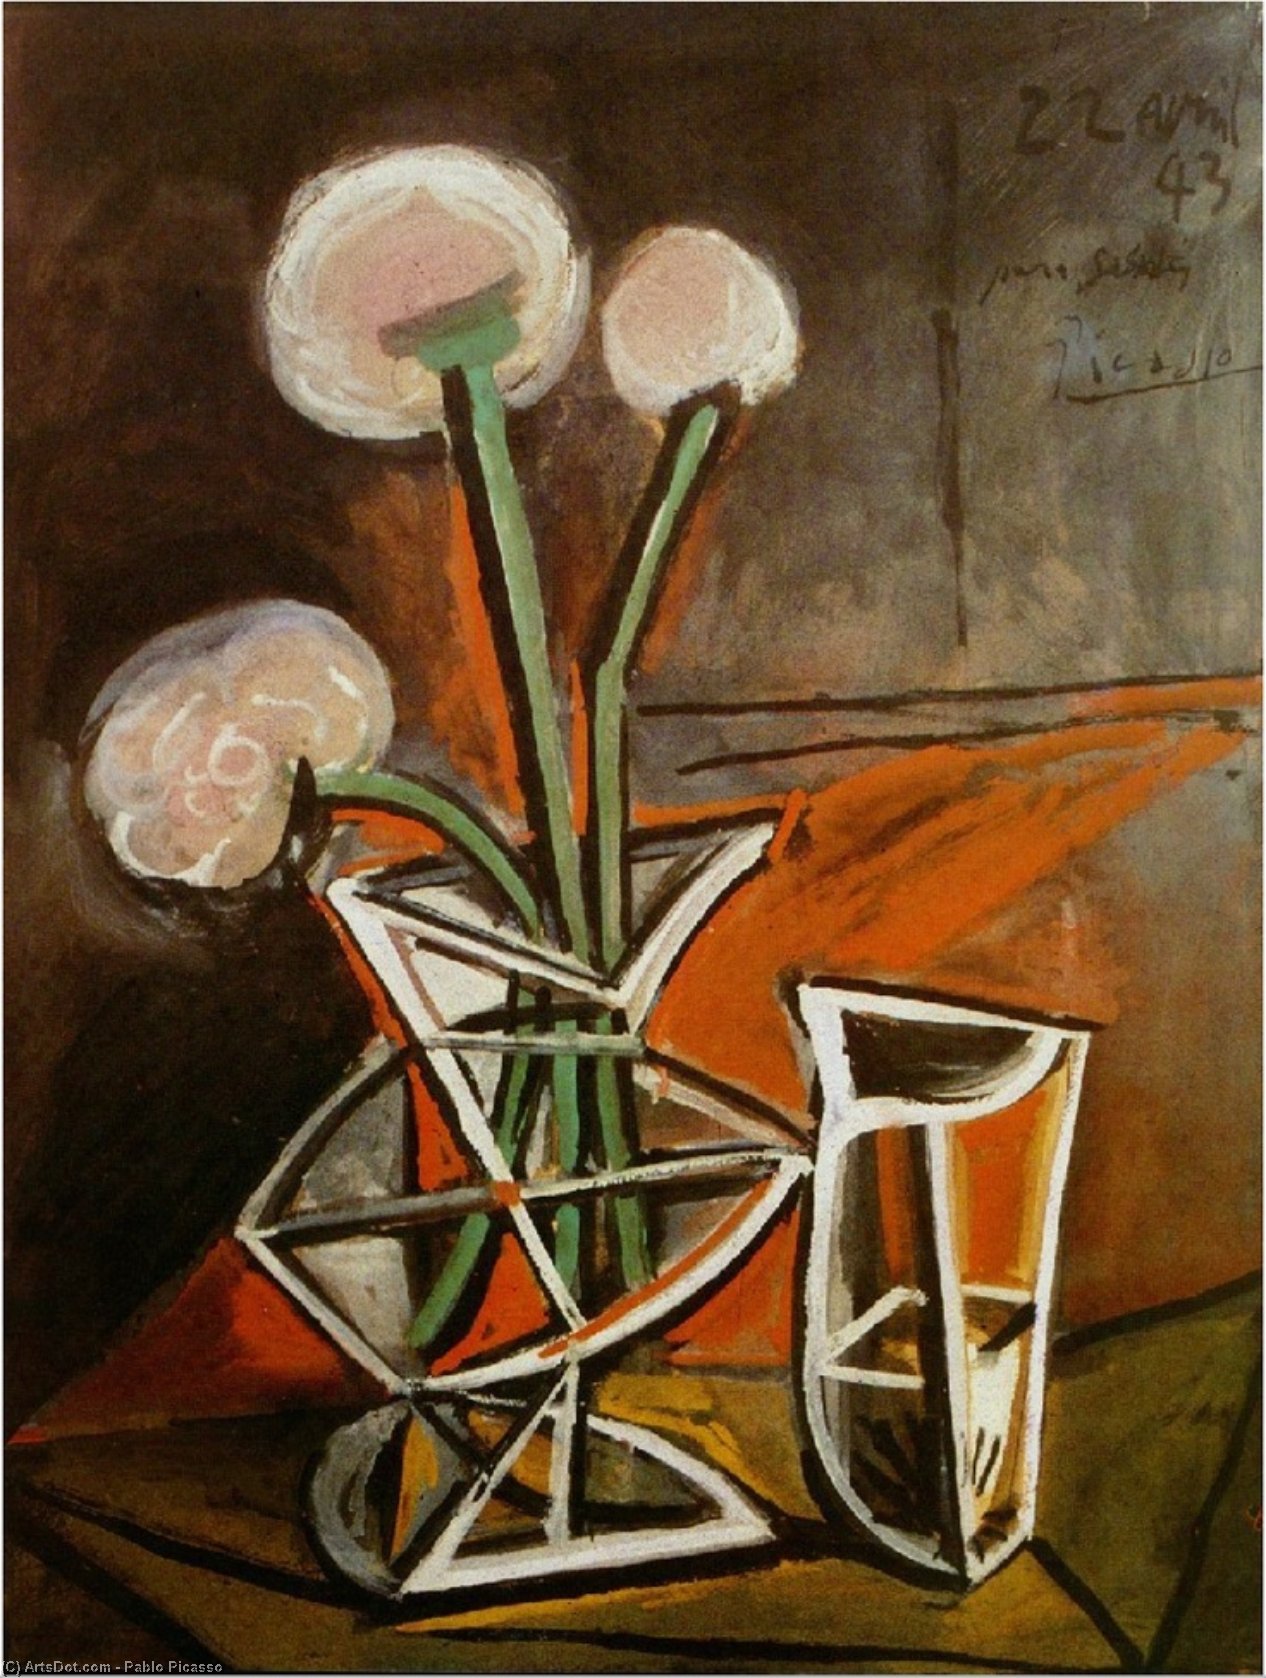 WikiOO.org - Enciclopédia das Belas Artes - Pintura, Arte por Pablo Picasso - Vase with flowers